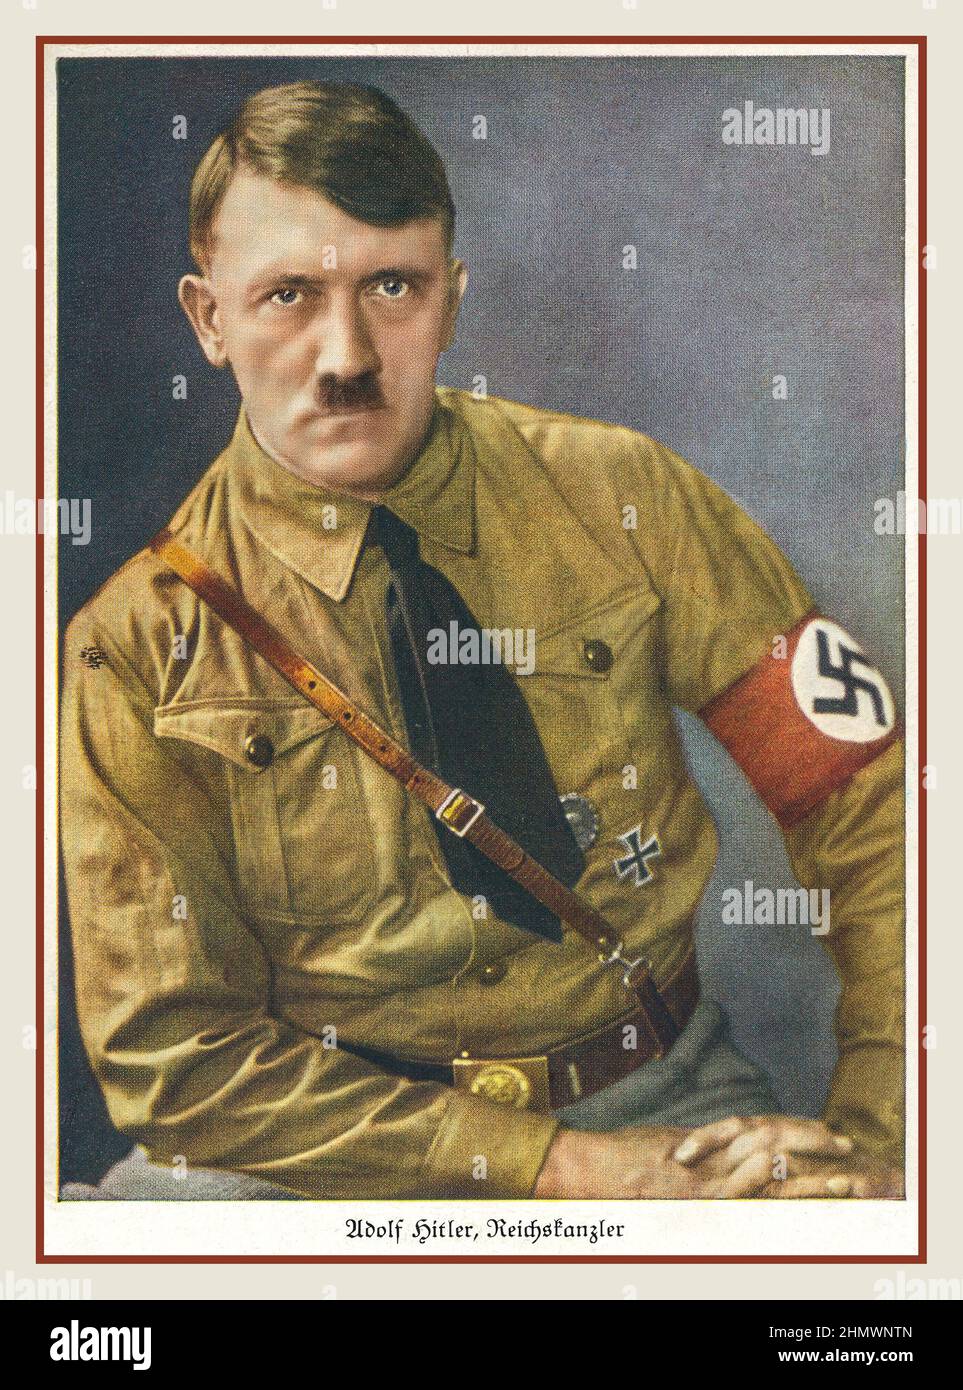 Adolf Hitler Reichs chancelier propagande des années 1930 portrait par Hoffmann dans Sturmabteilung sa 'Brown Shirts uniforme, avec swastika brassard l'activiste paramilitaire nazi branche antisémite du parti Banque D'Images